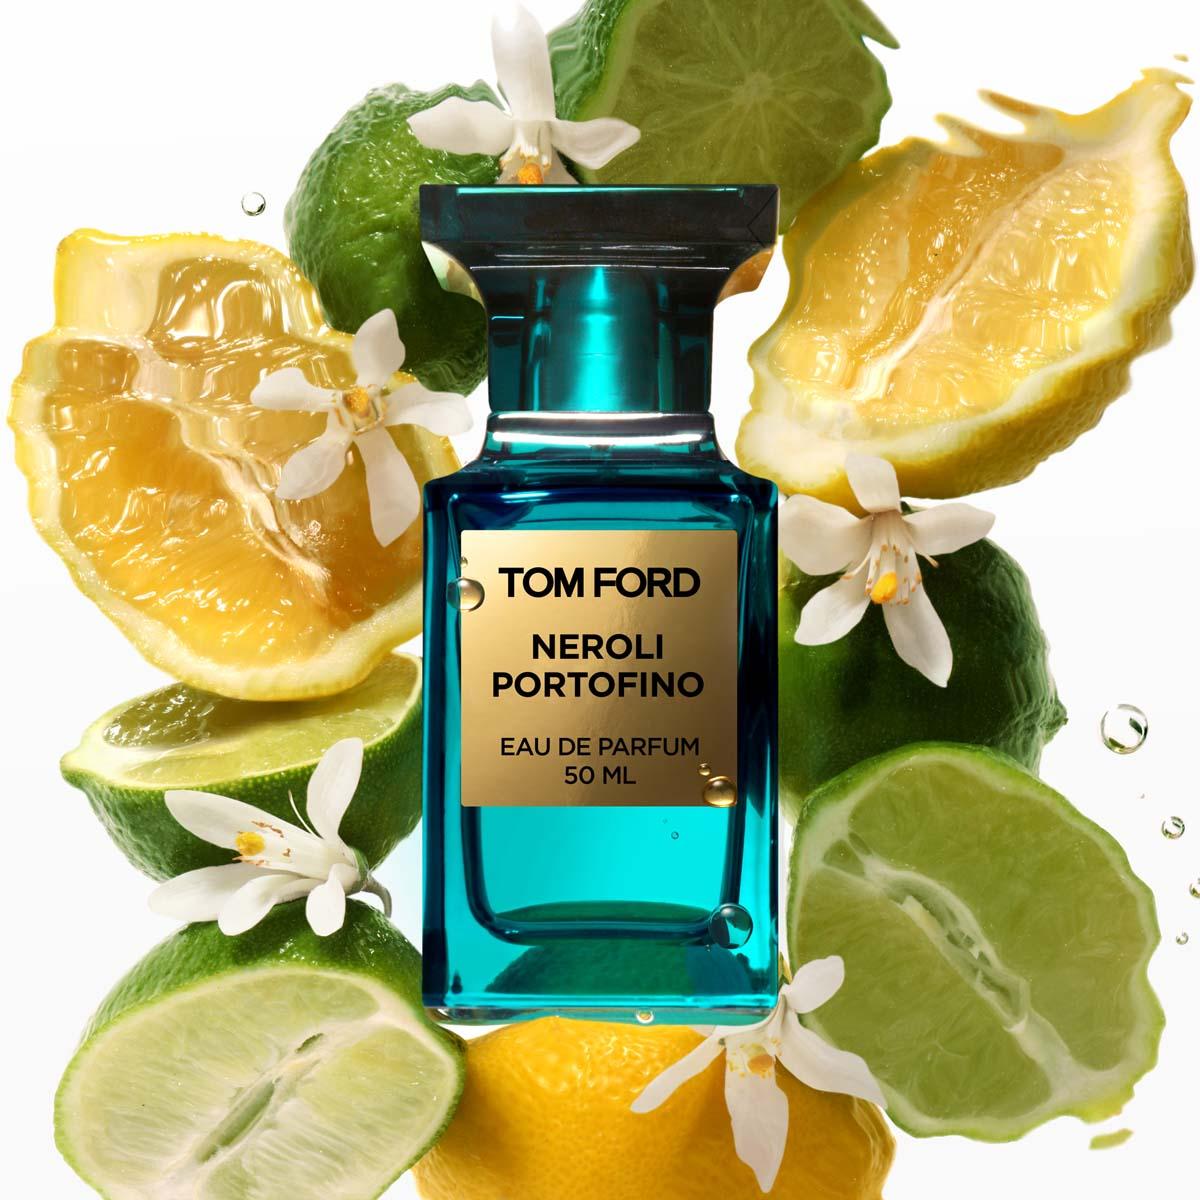 Tom Ford Neroli Portofino Eau de Parfum Spray 50ml | SEPHORA UK